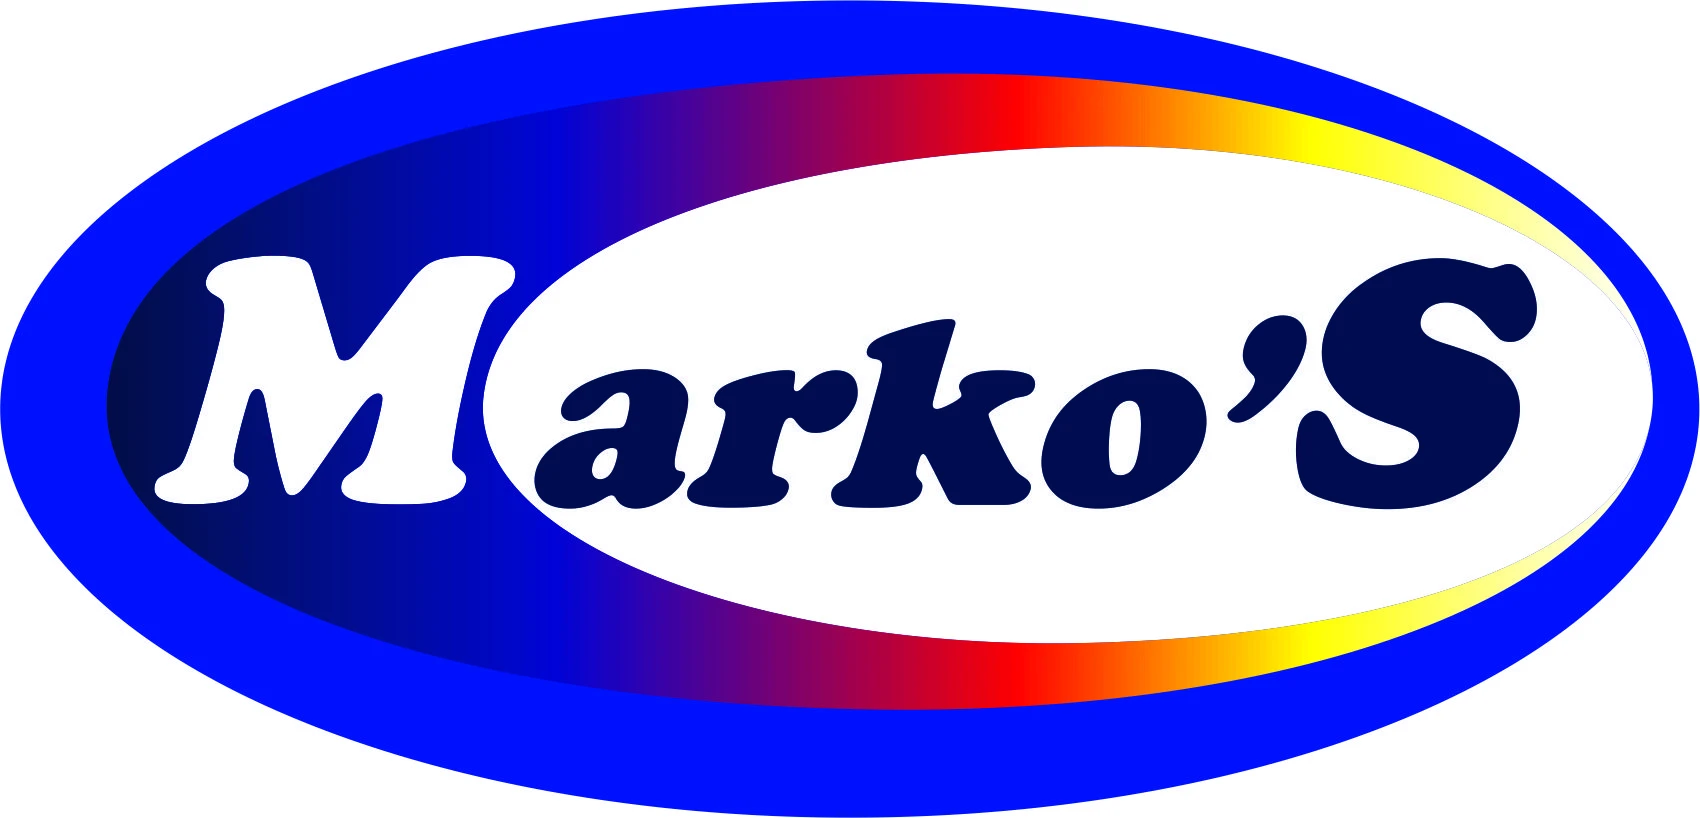 Marko's